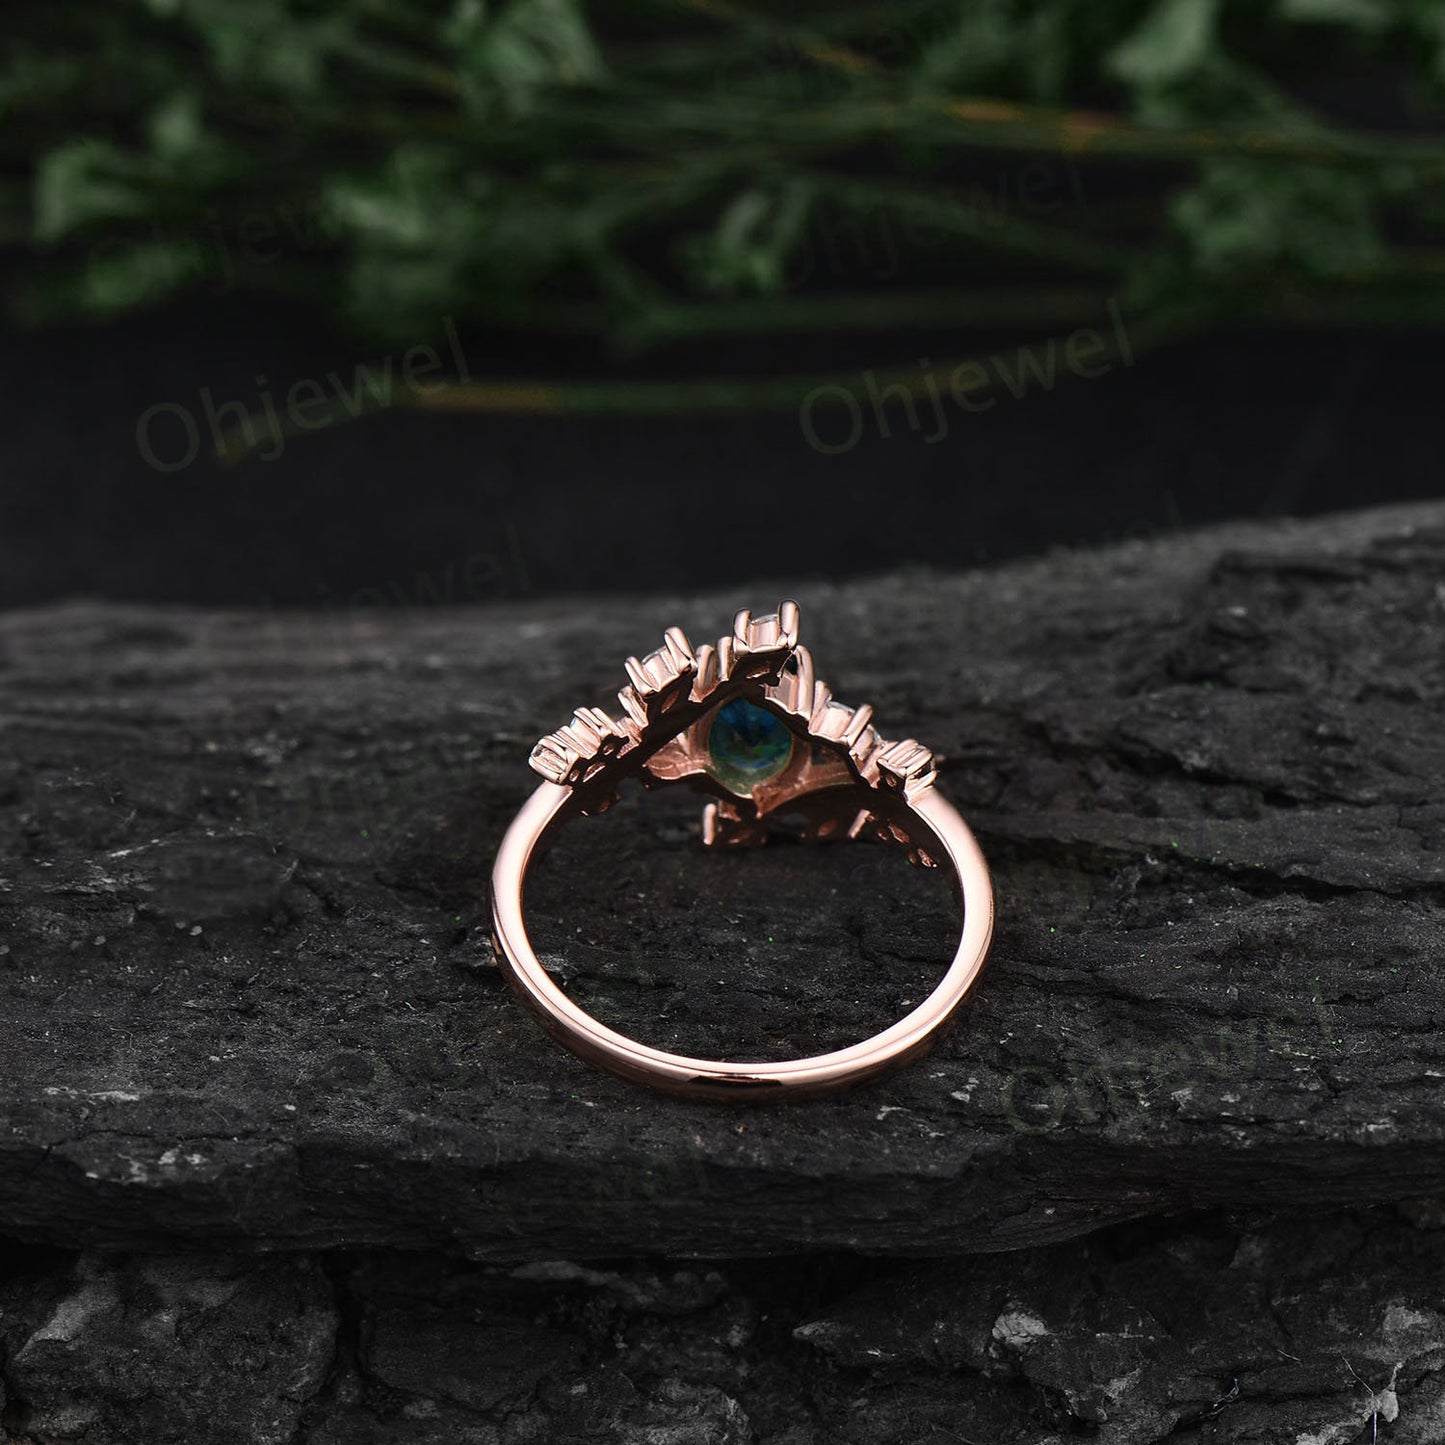 Vintage round Alexandrite engagement ring art deco leaf moonstone ring women rose gold nature inspired moissanite promise wedding ring gift